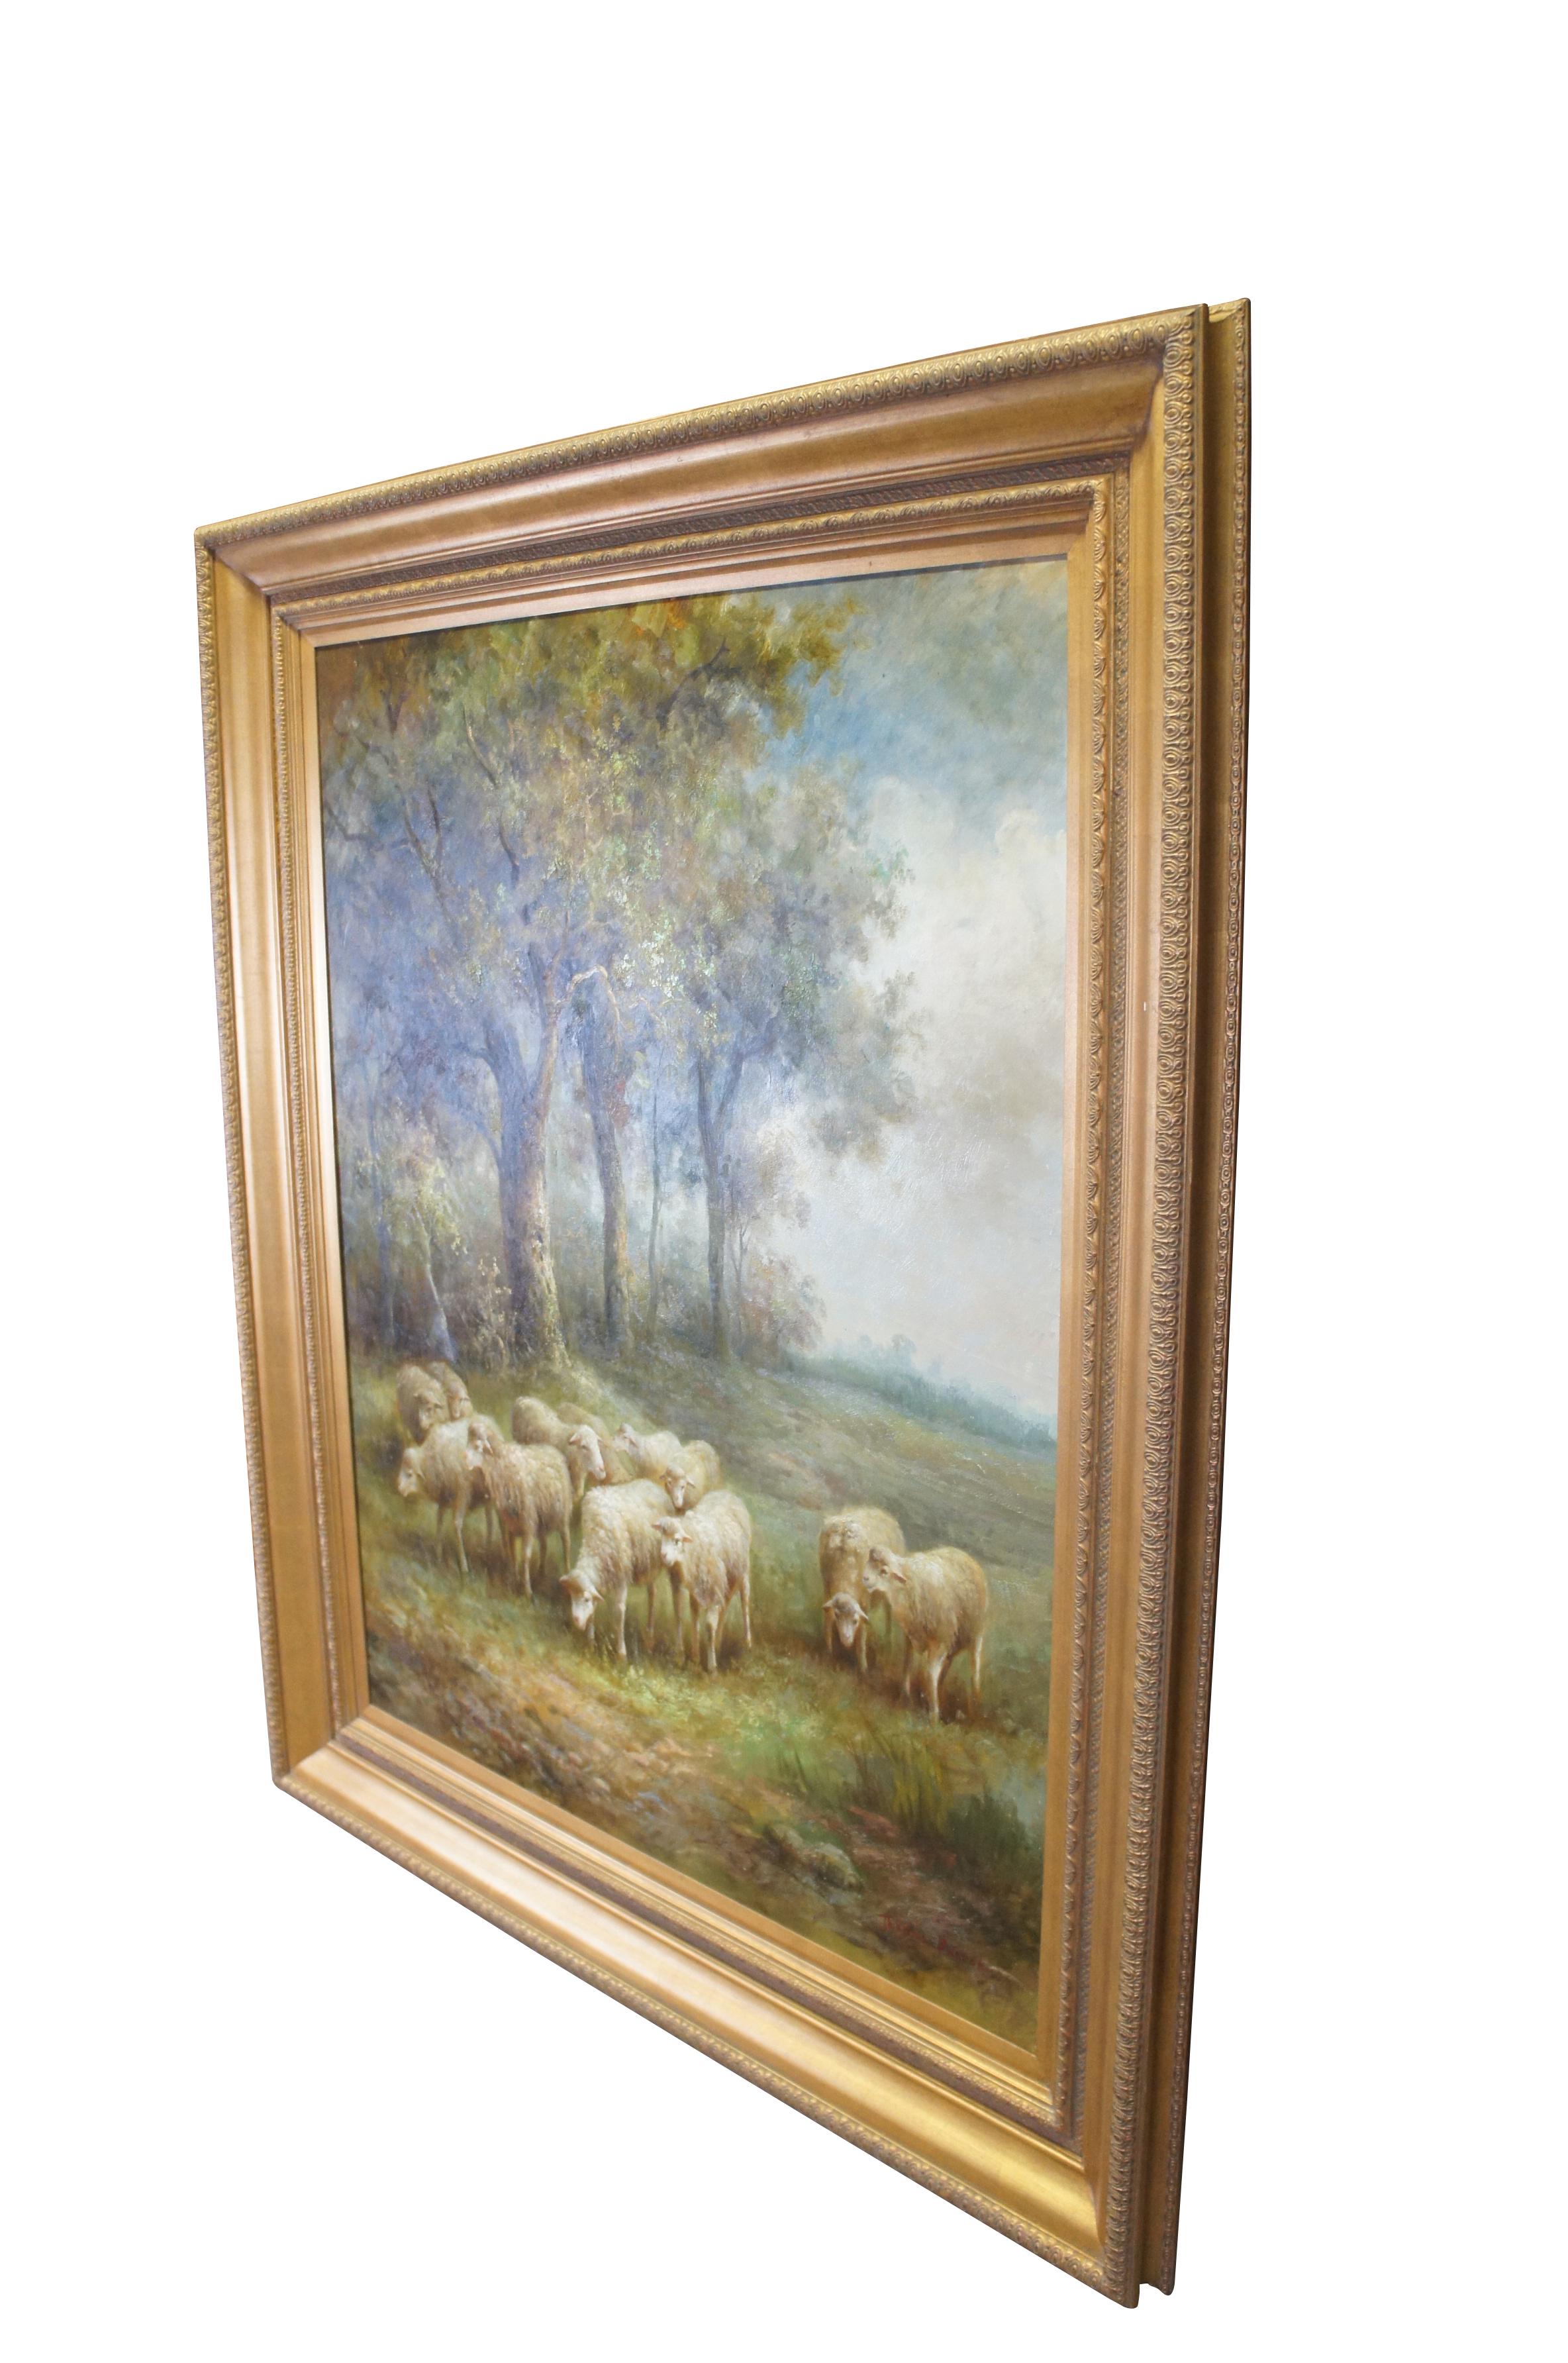 Très grande et impressionnante peinture à l'huile sur toile vintage de Thomas Barron représentant un troupeau de moutons / agneaux broutant à la lisière d'une forêt dans la campagne.  Encadré dans un élégant cadre doré.

Dimensions :
74.5